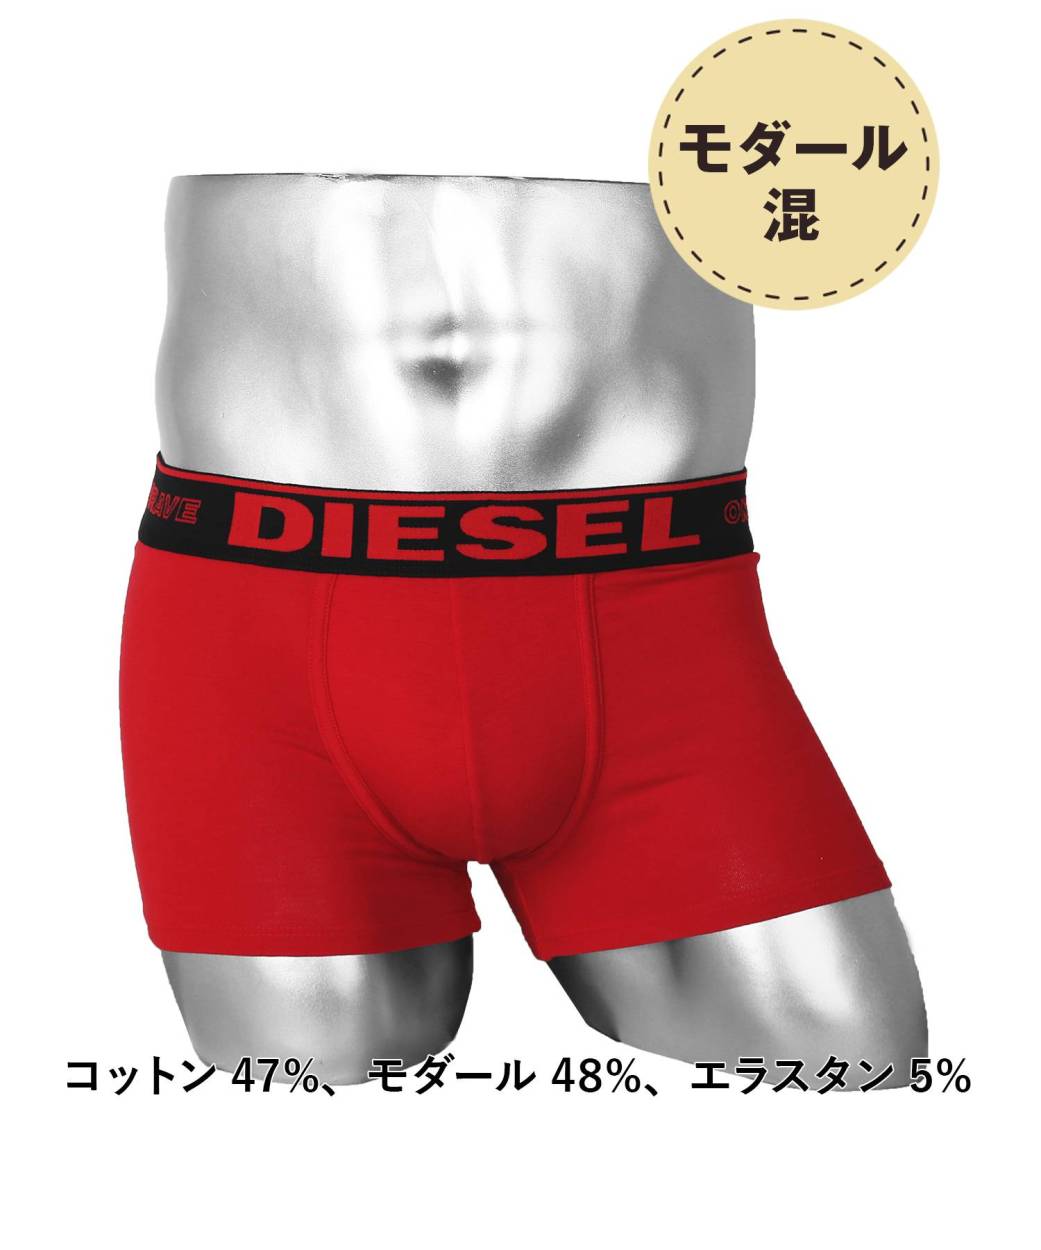 ディーゼル DIESEL ボクサーパンツ メンズ アンダーウェア 男性 下着 綿混 コットン ブランド ロゴ プレゼント ギフト